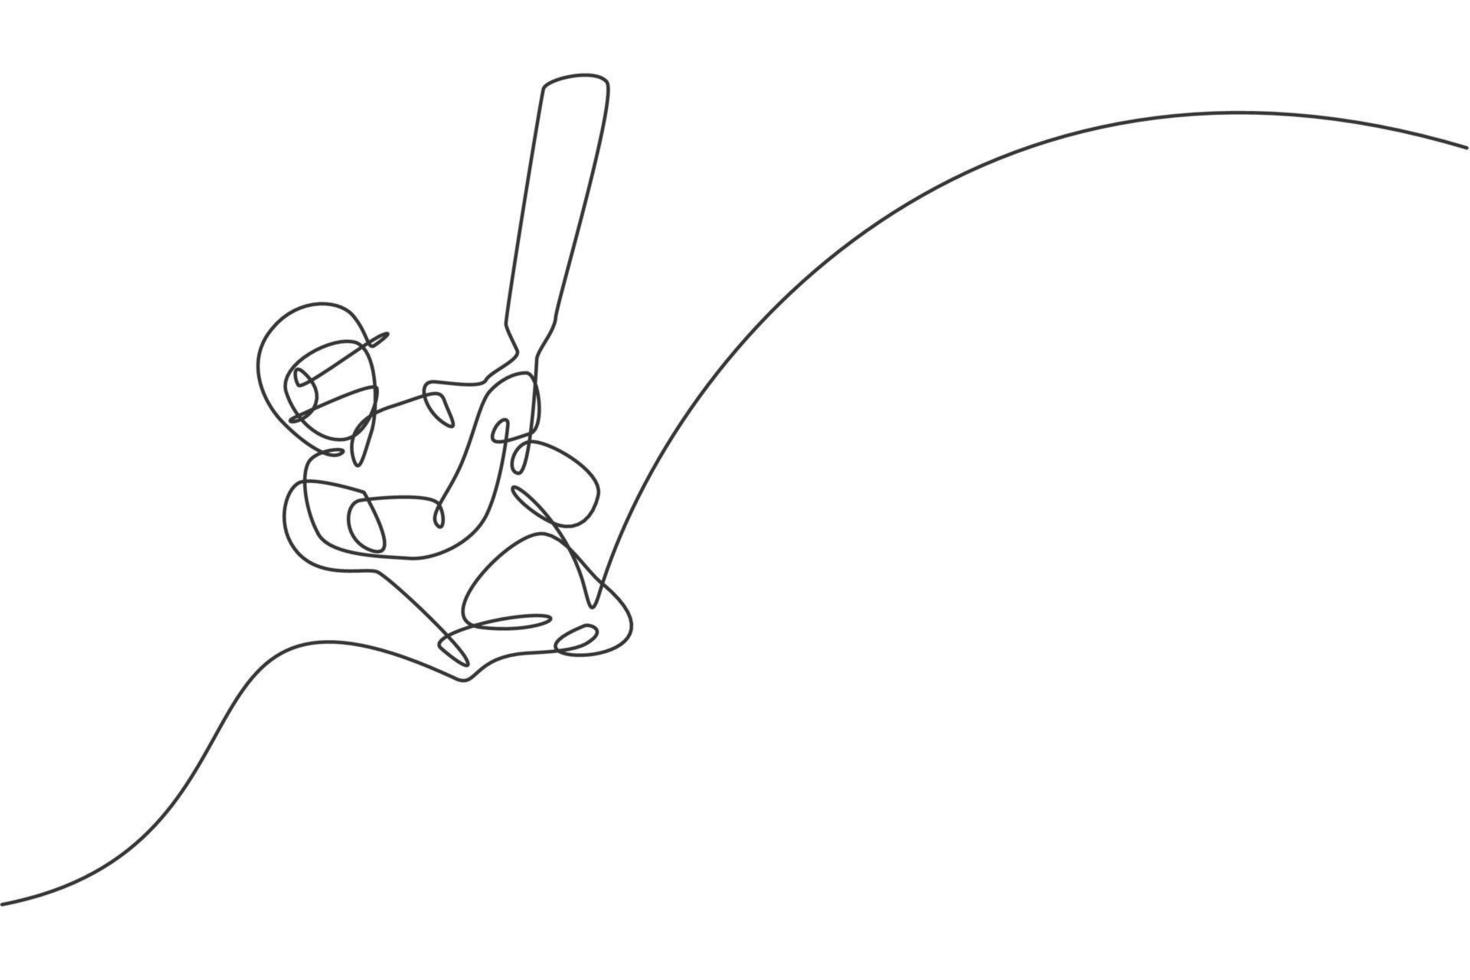 en kontinuerlig linjeteckning av ung glad man cricket spelare fokus för att träna cricket bat swing vektor illustration. tävlingsidrottskoncept. dynamisk enda rad rita design för reklam affisch